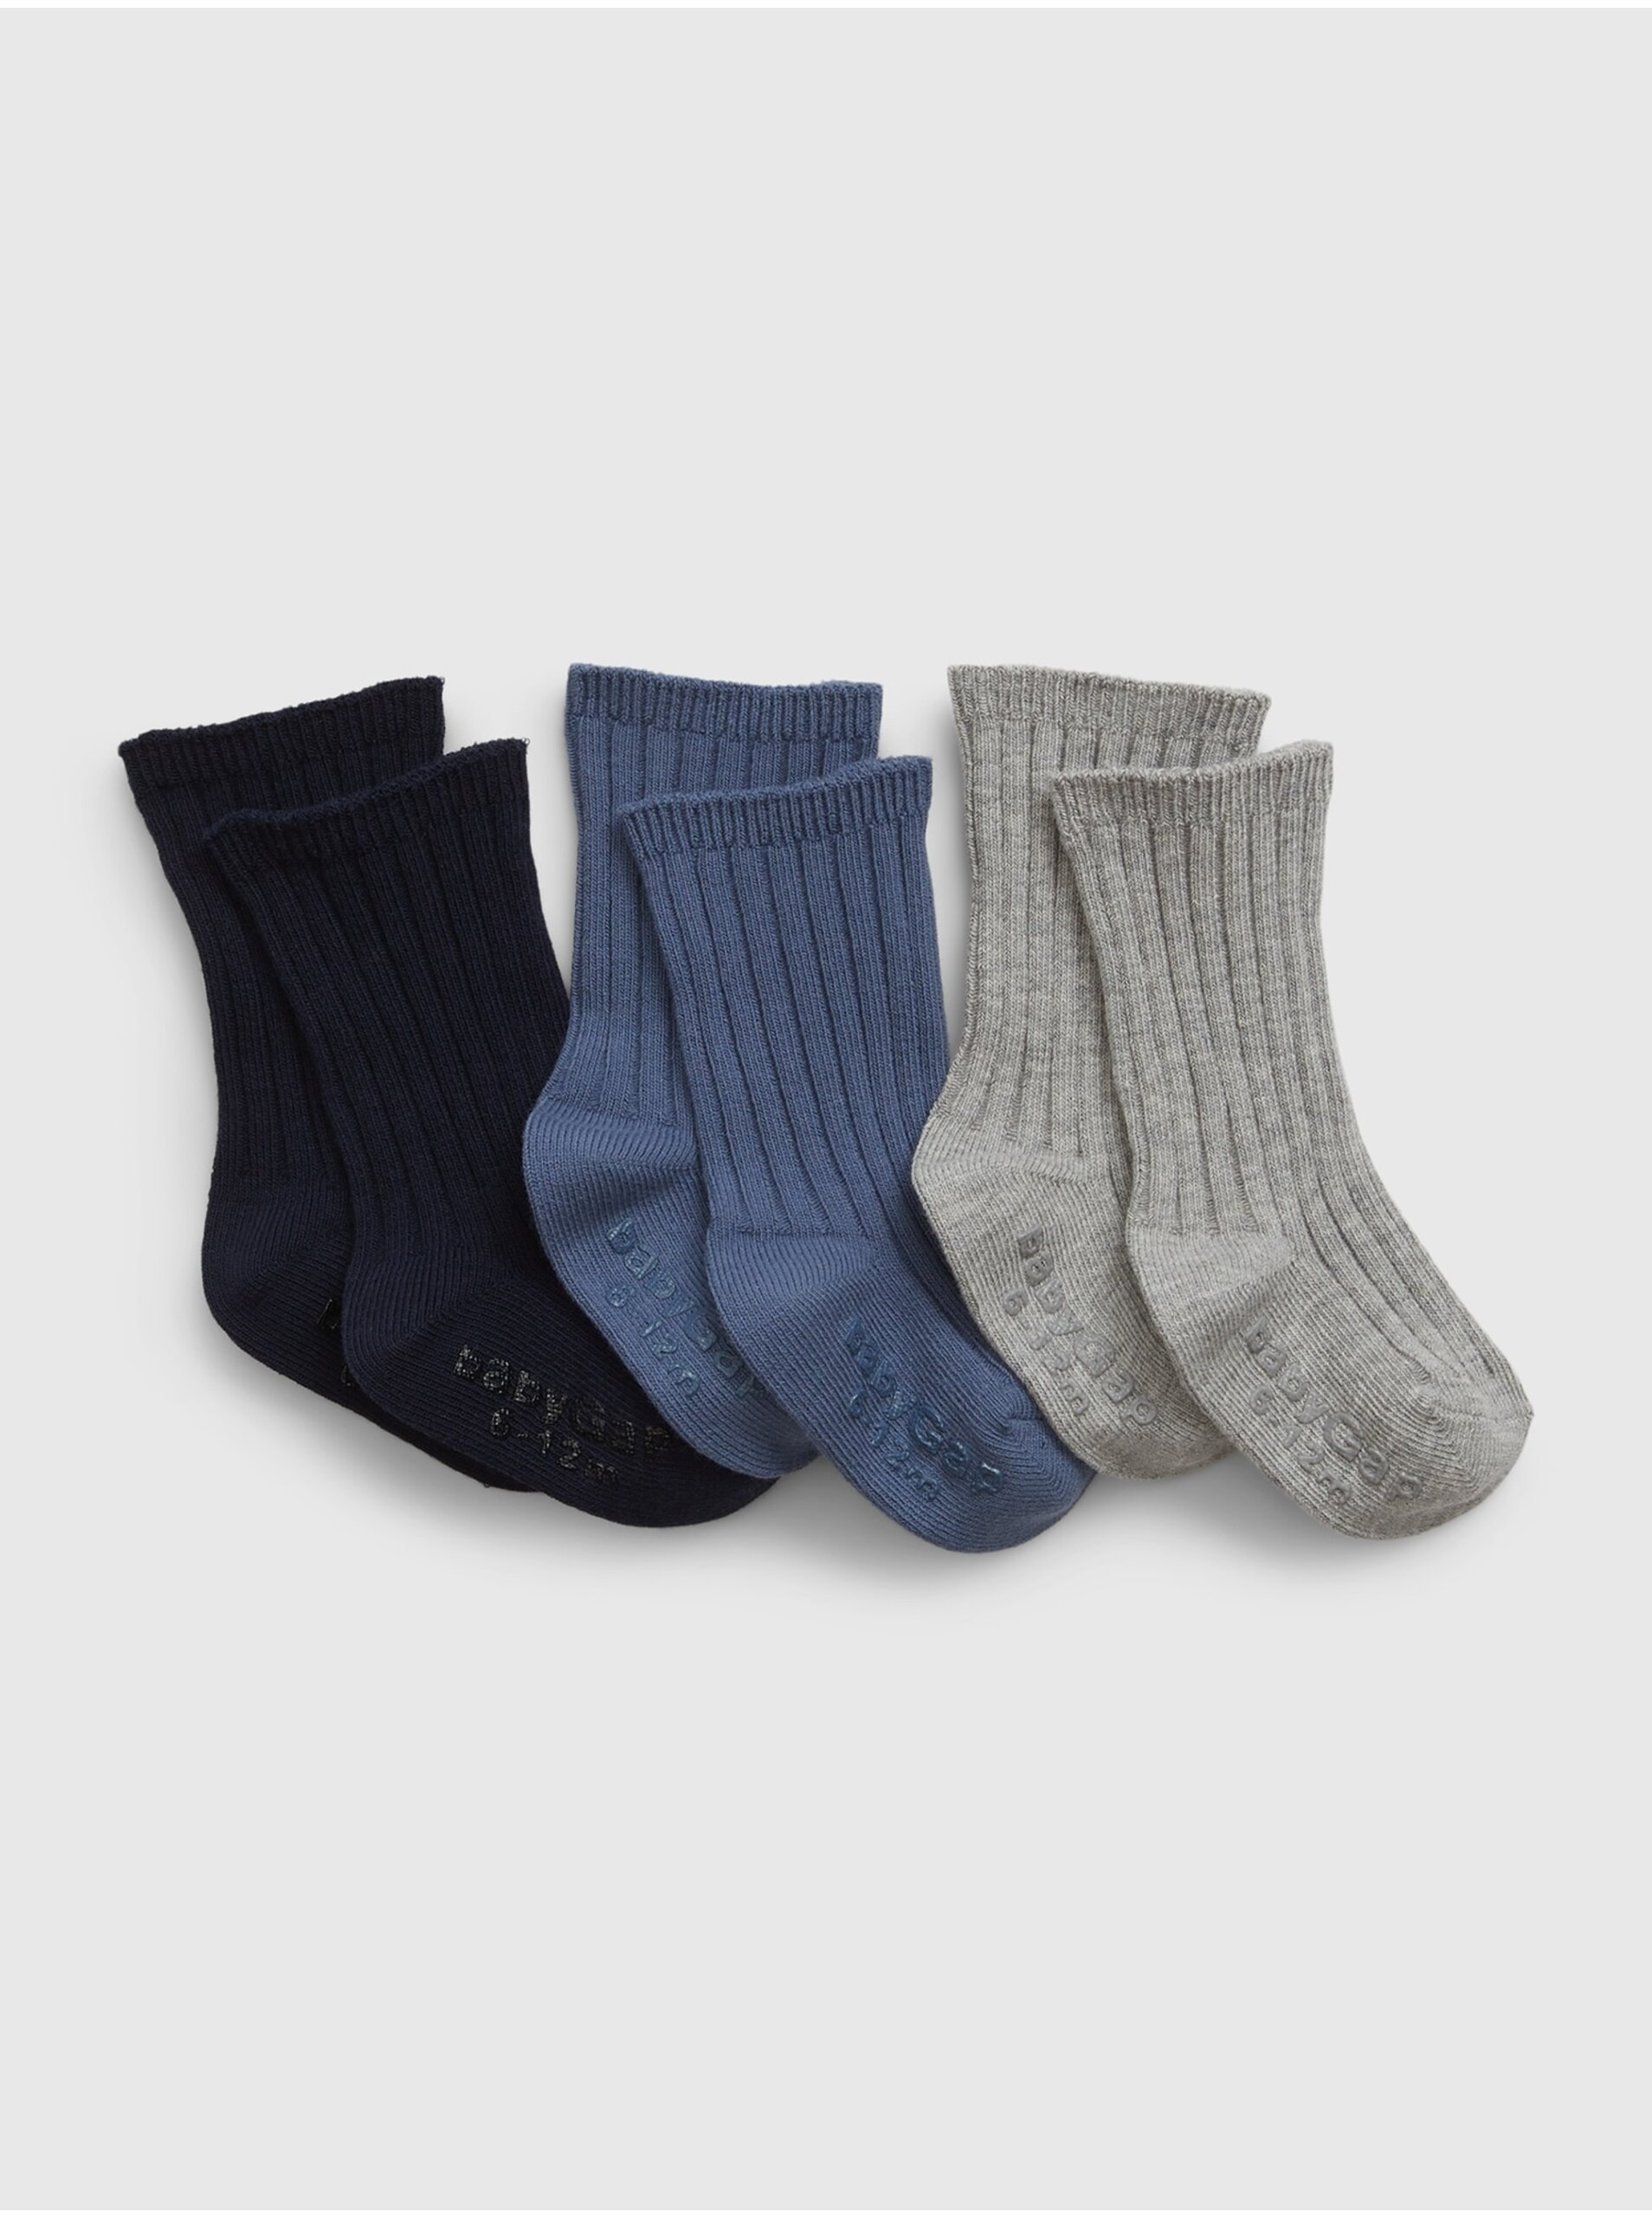 Lacno Súprava troch párov detských ponožiek v čiernej, modrej a šedej farbe GAP